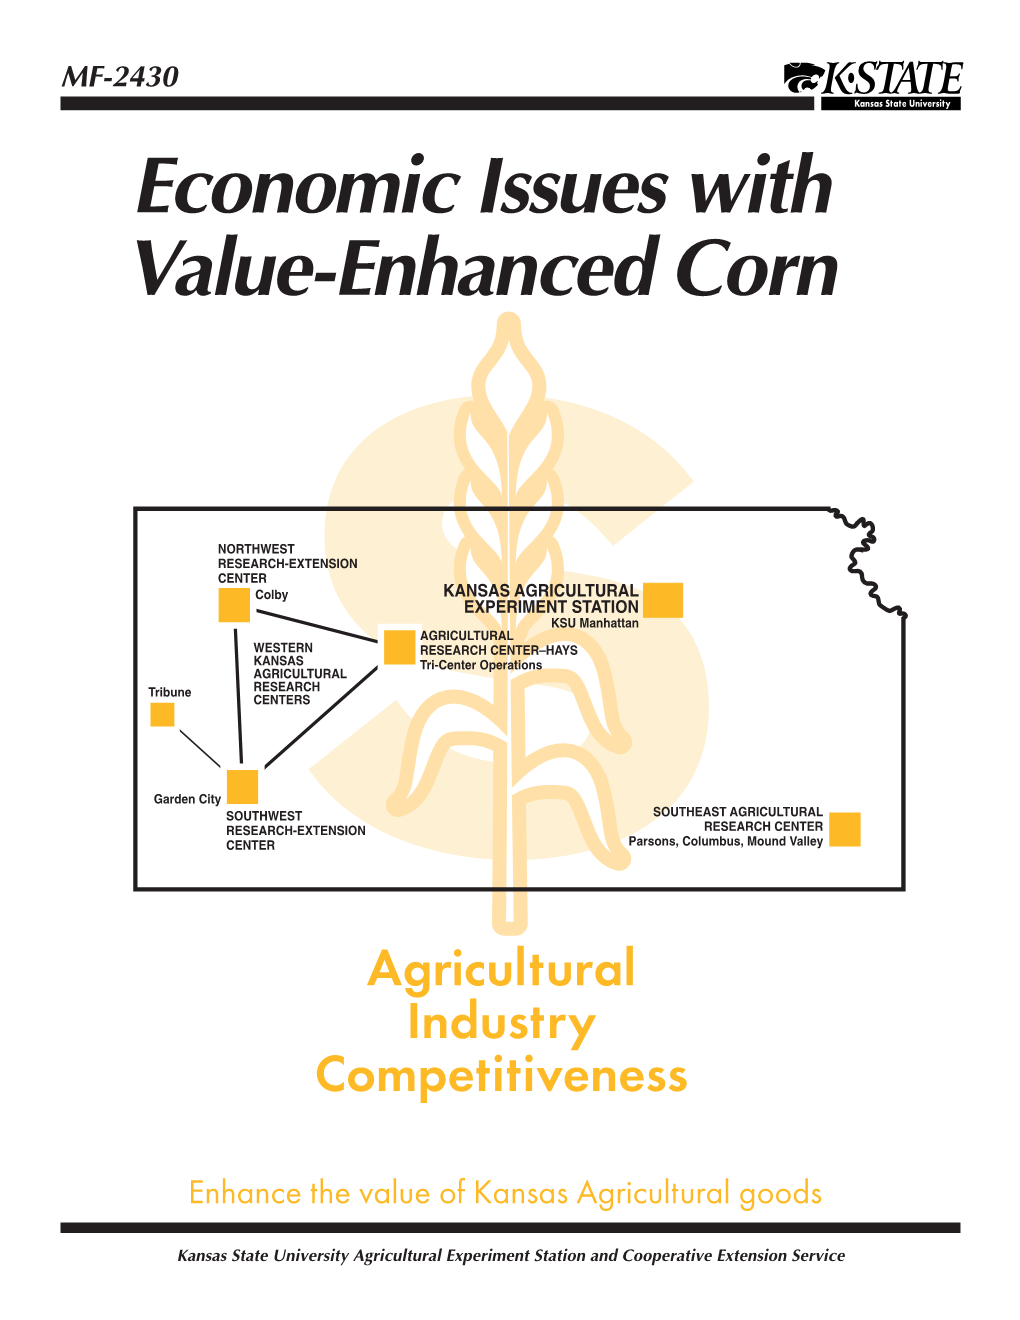 MF2430 Economic Isues Withvalue Enhanced Corn